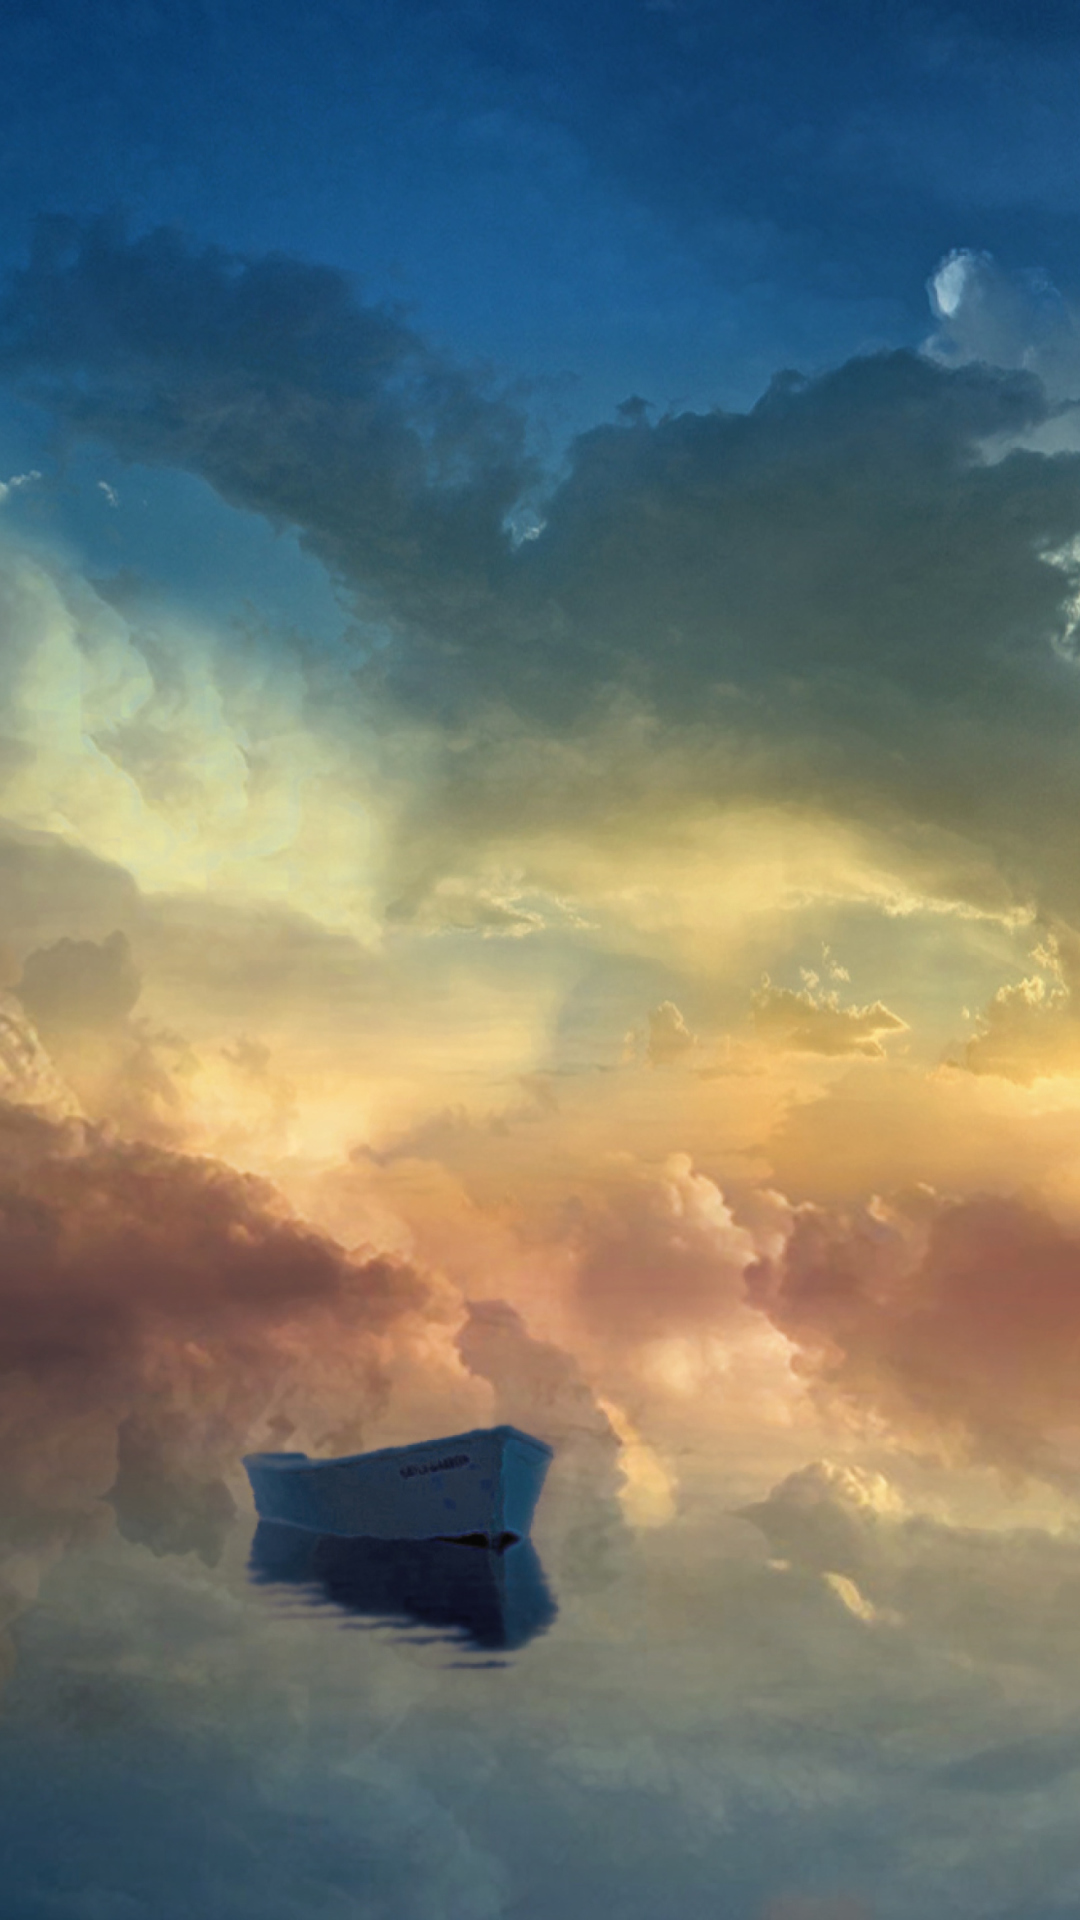 Обои Boat In Sky Ocean Painting 1080x1920